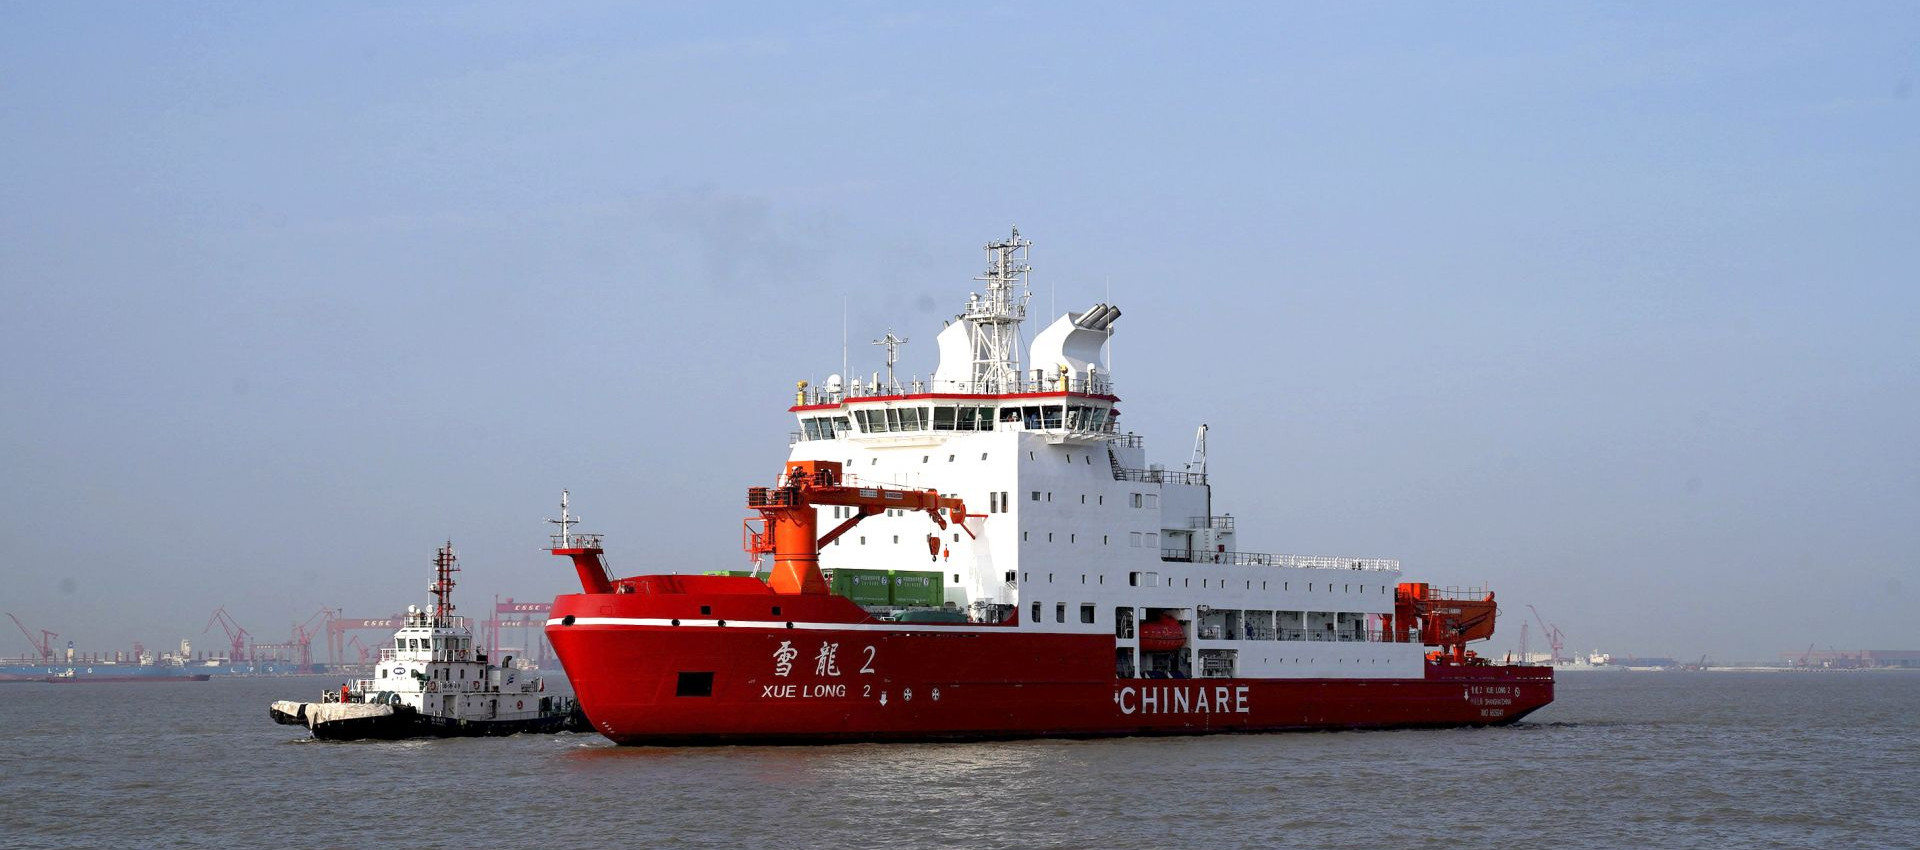 mais recente caso da empresa sobre O fio de soldadura de Longteng foi usado no navio polar da expedição de Xuelong